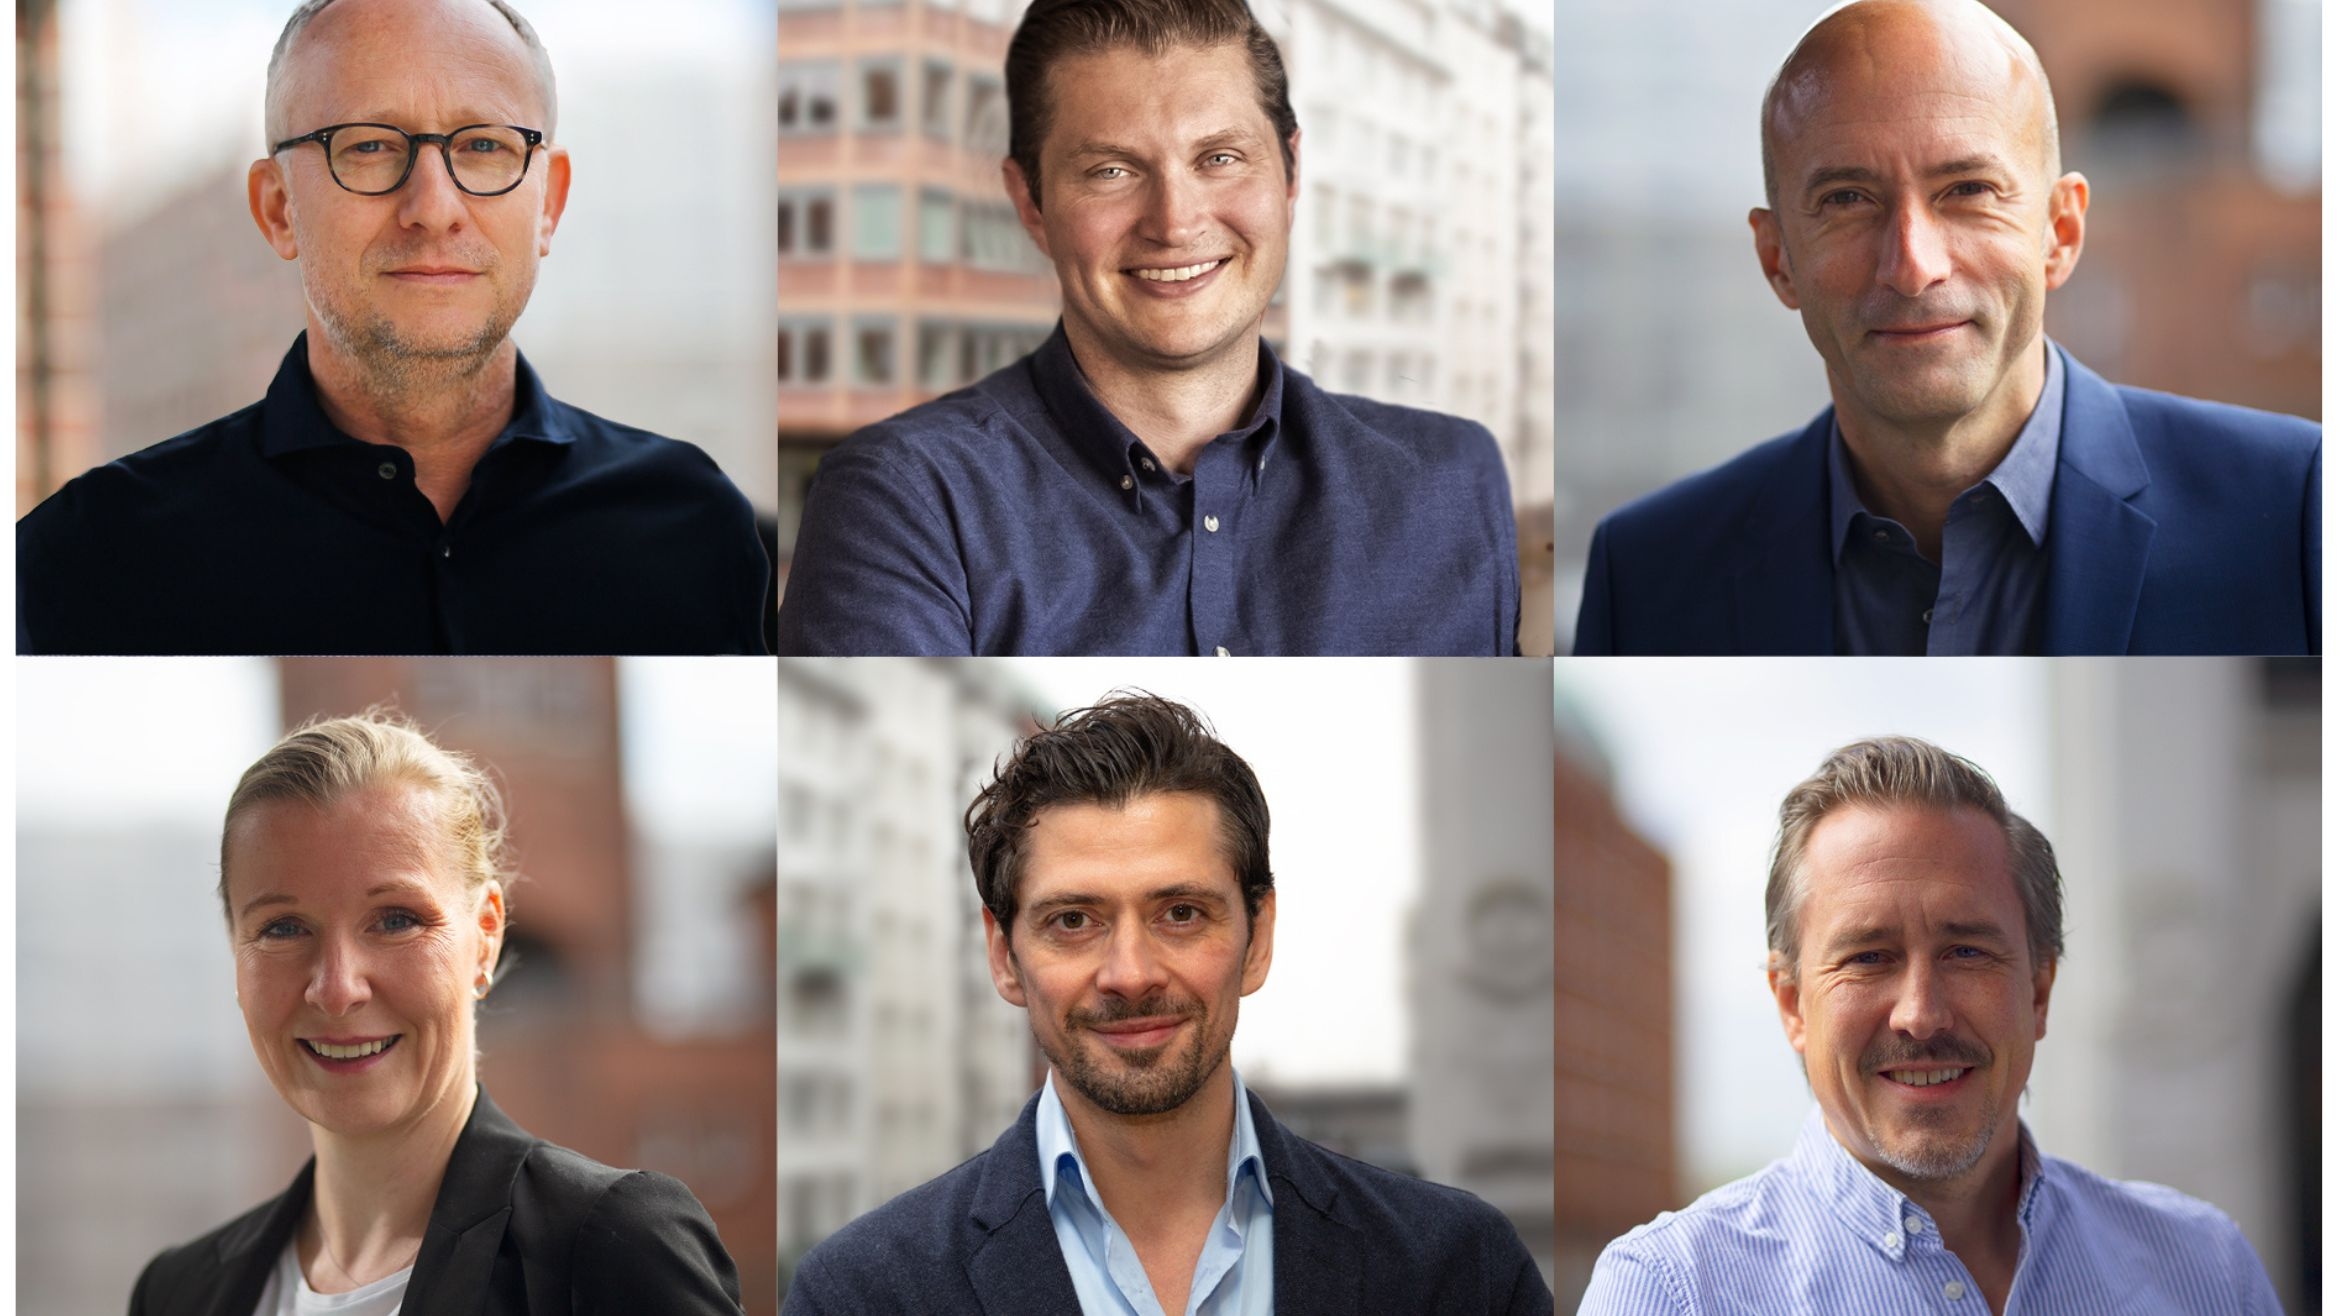 Die Führung von Pahnke Group und Fluent (von links oben nach rechts unten): Géza Unbehagen, Lars Lammers, Andreas Bahr, Stefanie Hahn, Martin Loytved und Daniel Frericks – 